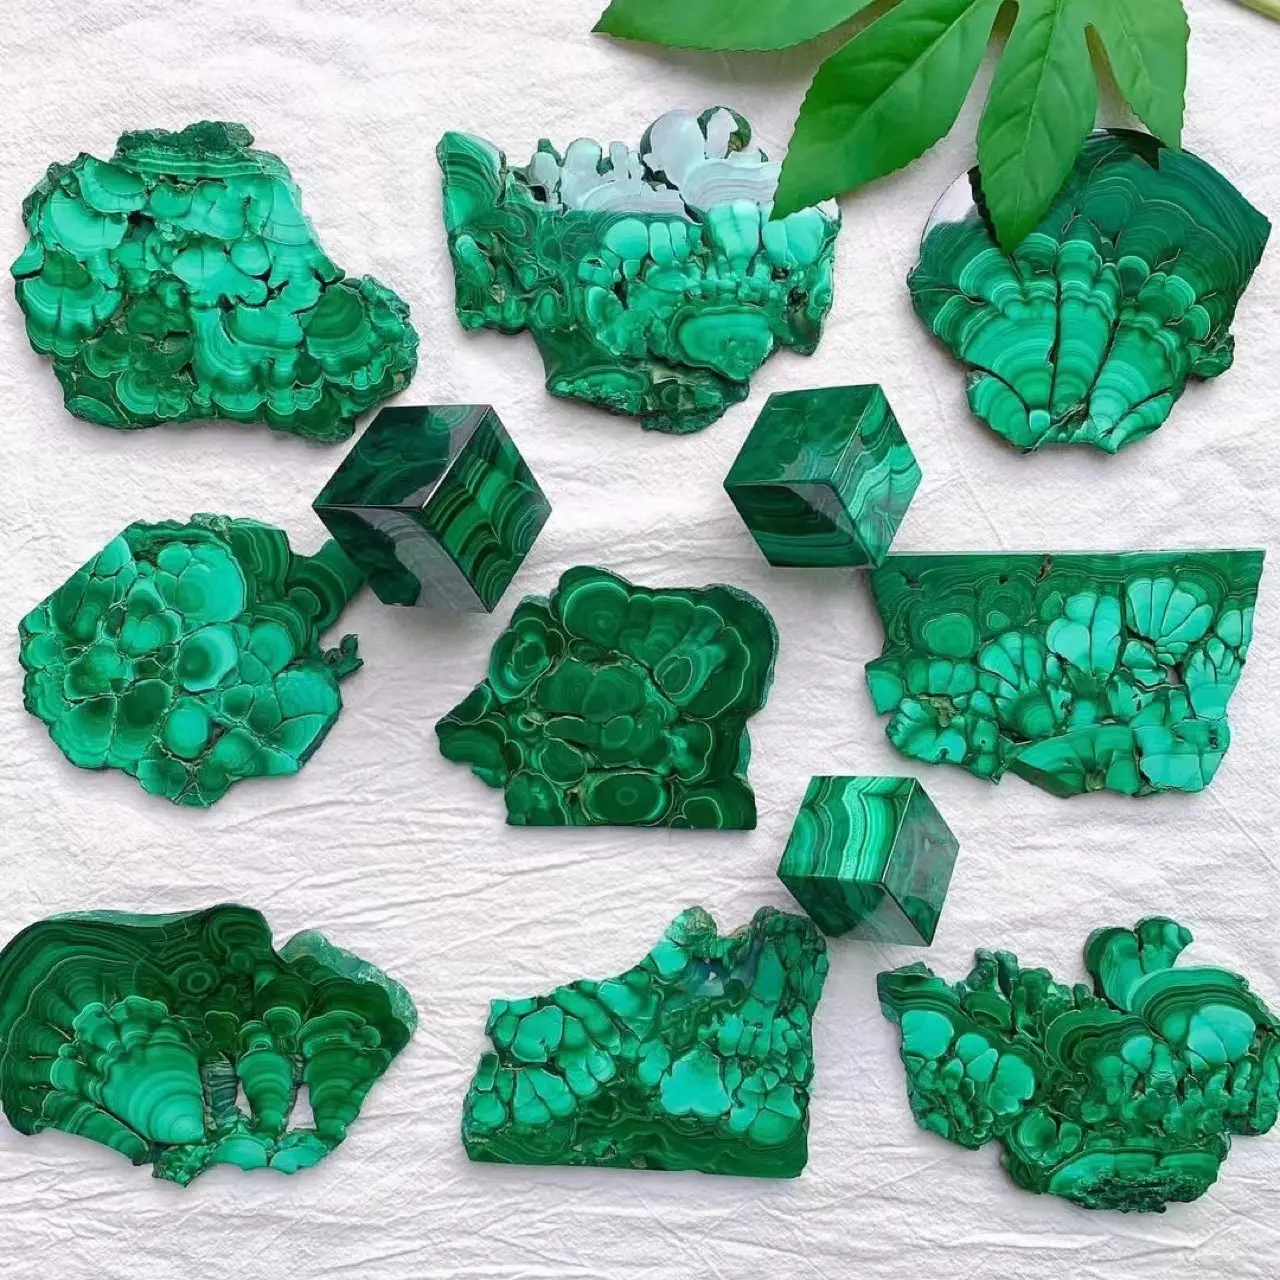 großhandel natürliche malachit-platte polierter stein heiledelstein malachit-kristall grüne steinscheibe platten geschenk für fengshui